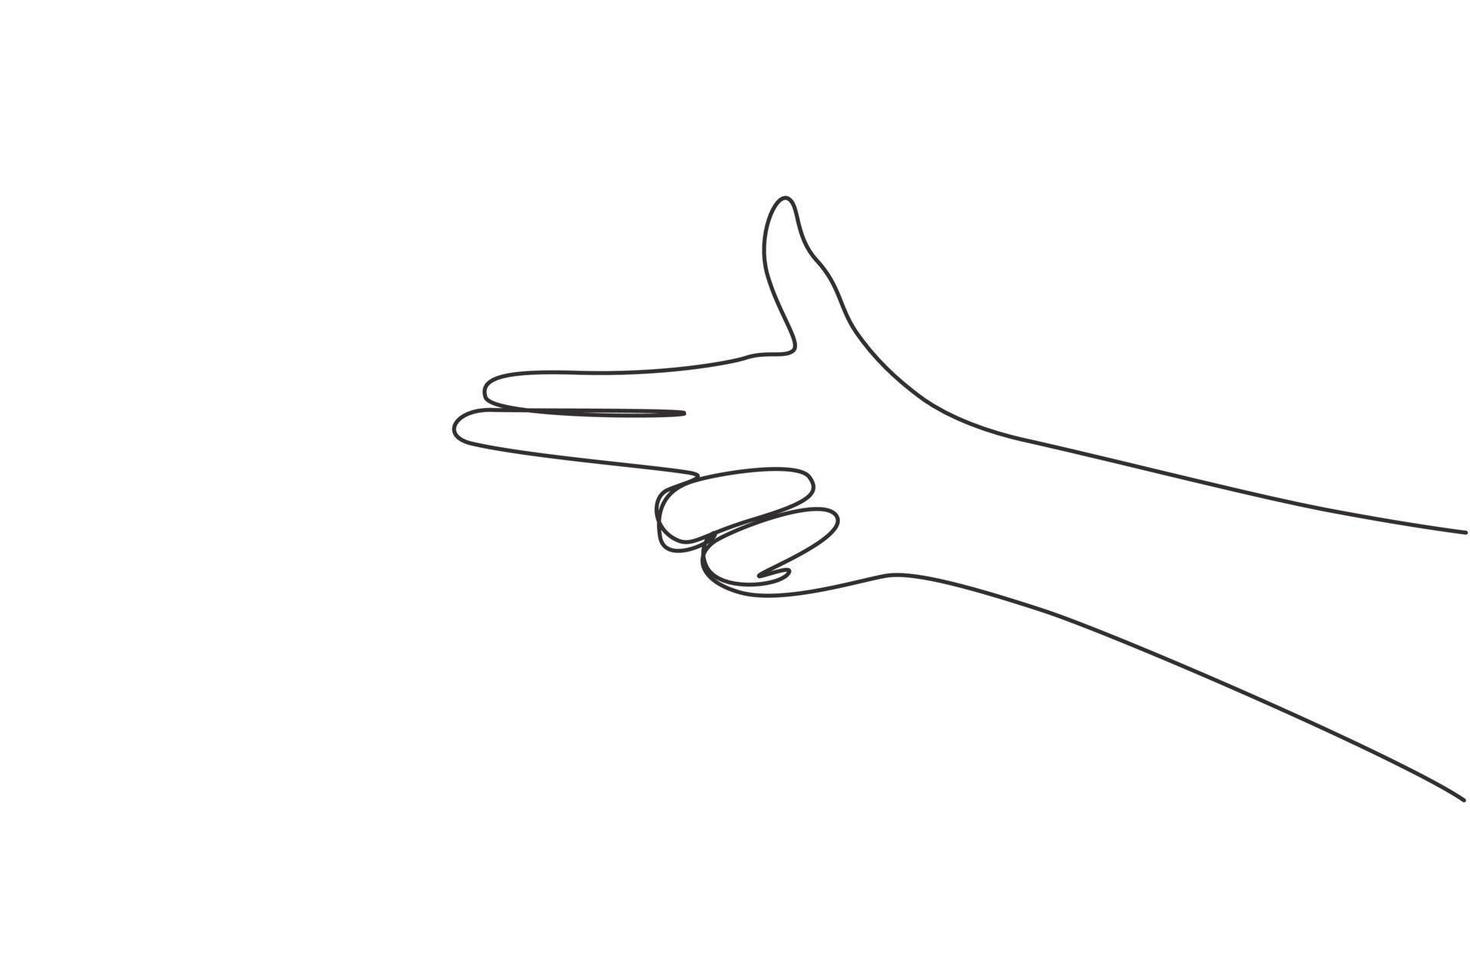 Kontinuierliche eine Linie zeichnende Hand, die mit den Fingern die Feuerwaffe gestikuliert und auf das Schießsymbol zielt. Hand, die Gewehrgeste macht. Handschusszeichen oder -symbol. Waffen von Hand. Single Line Draw Design Vektorgrafik vektor